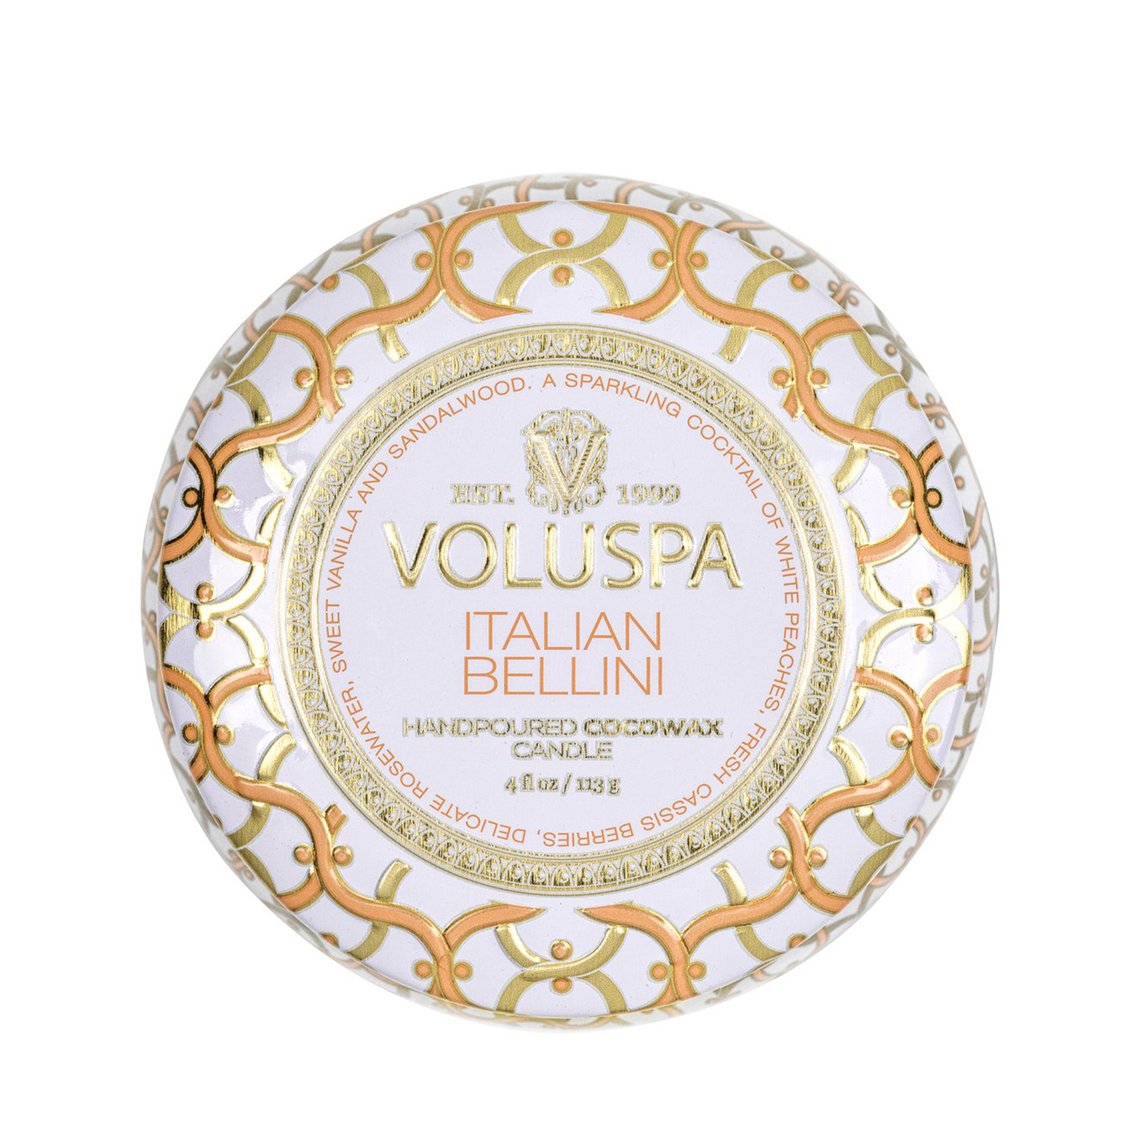 VOLUSPA Italian Bellini Decorative Candle.